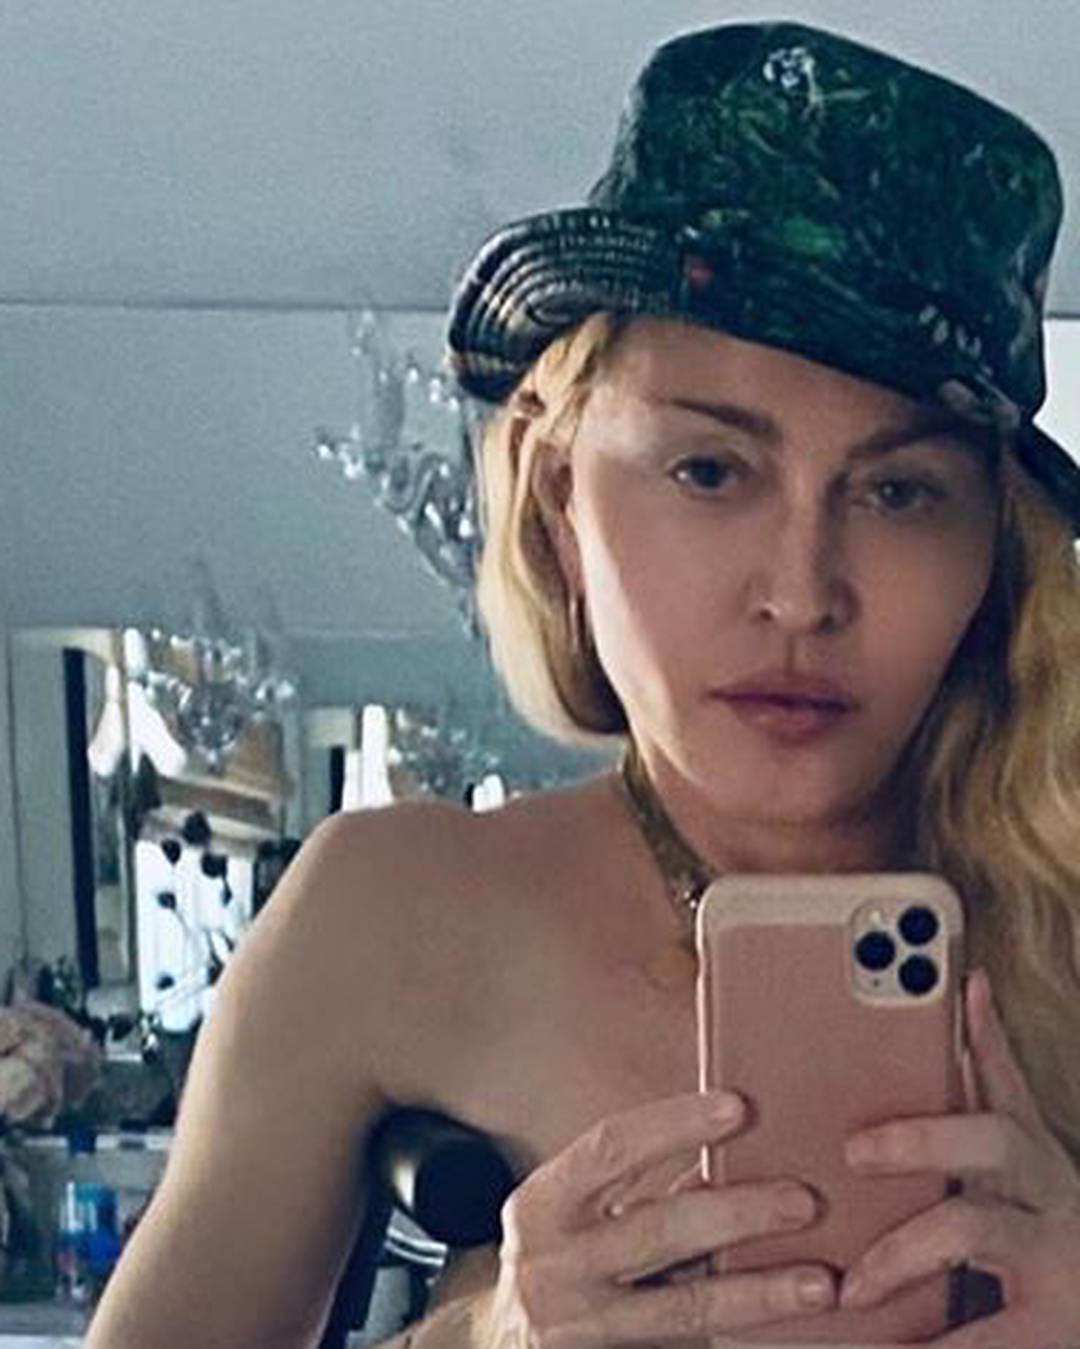 Instagram cenzurirao Madonnu, širila je teorije zavjere o koroni